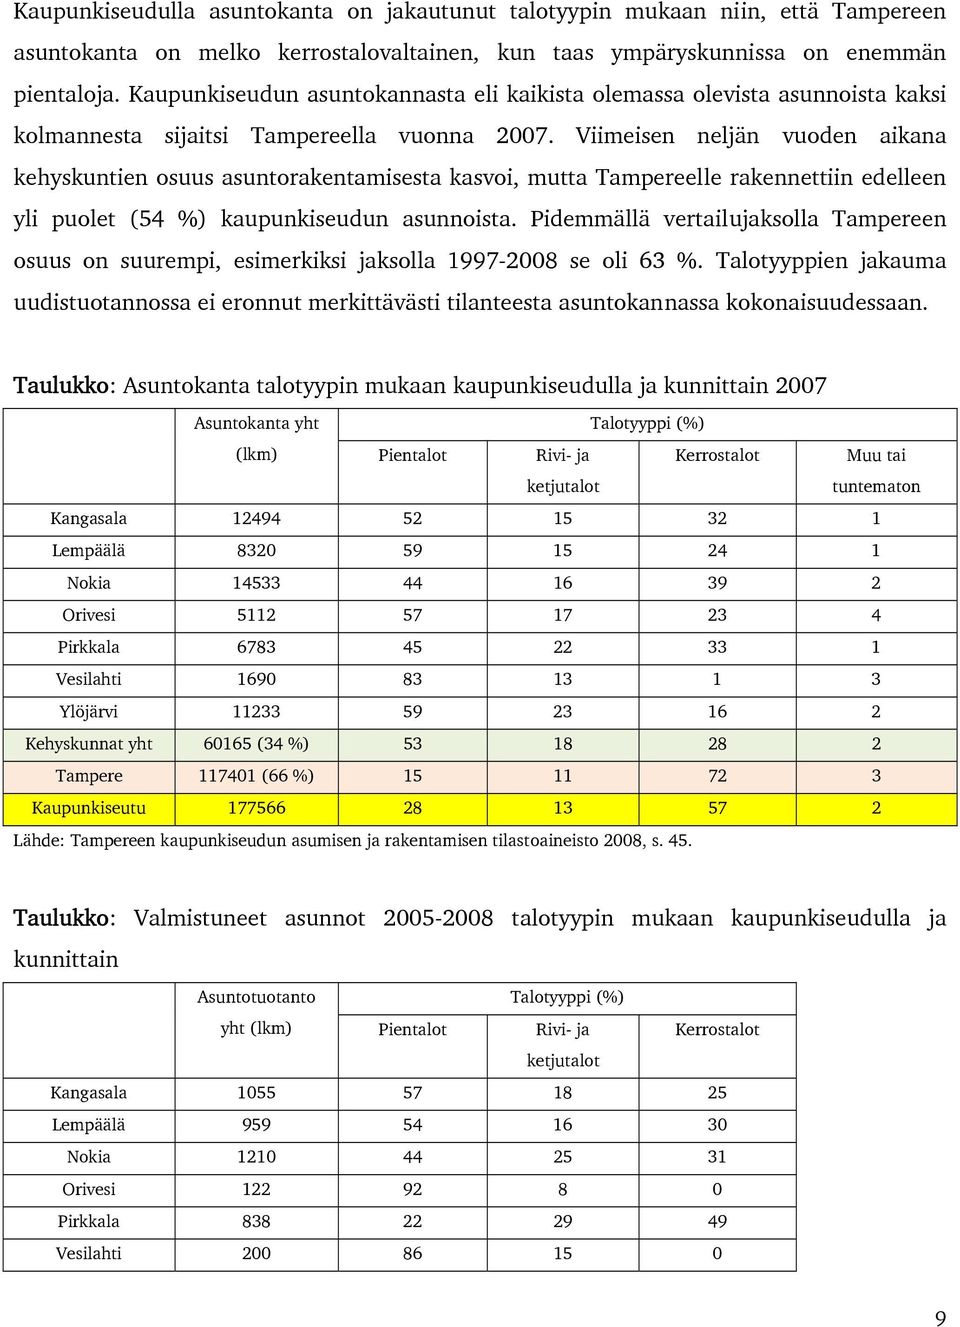 Viimeisen neljän vuoden aikana kehyskuntien osuus asuntorakentamisesta kasvoi, mutta Tampereelle rakennettiin edelleen yli puolet (54 %) kaupunkiseudun asunnoista.